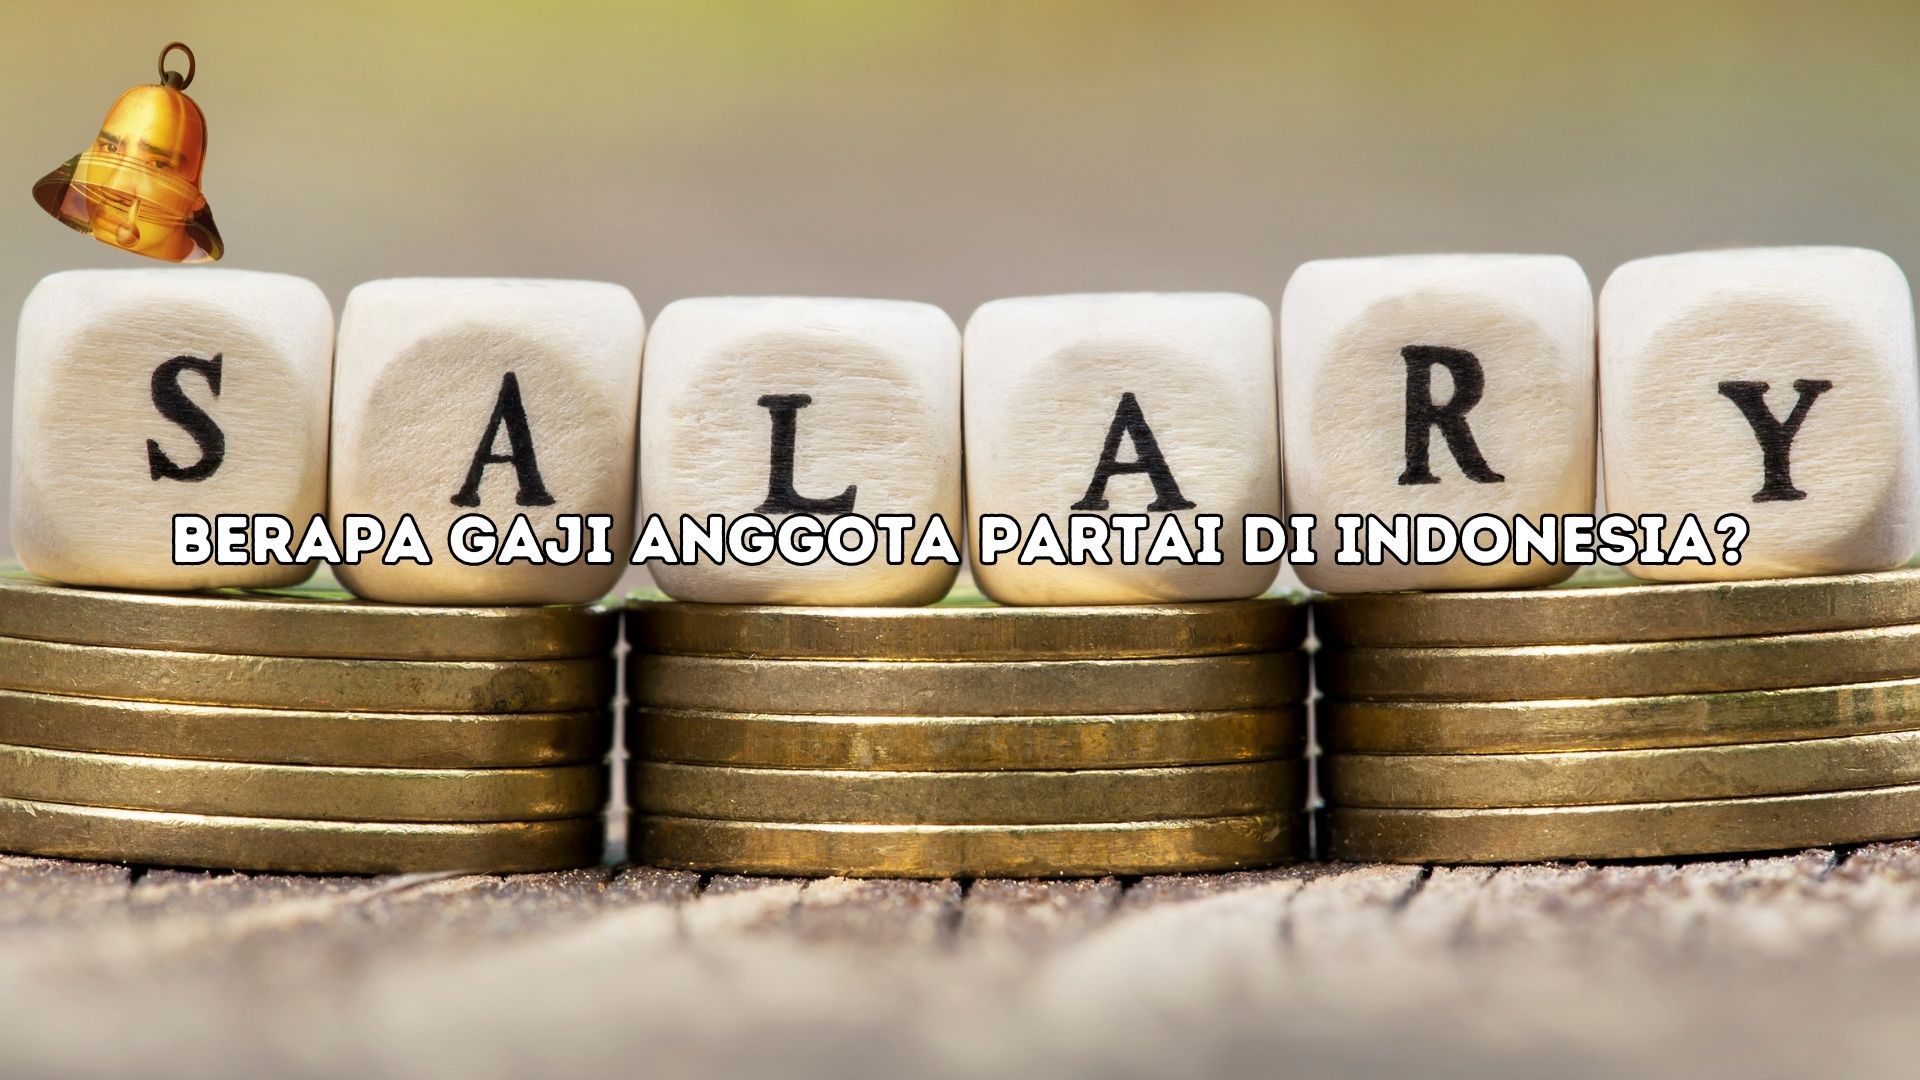 Berapa gaji anggota partai di indonesia